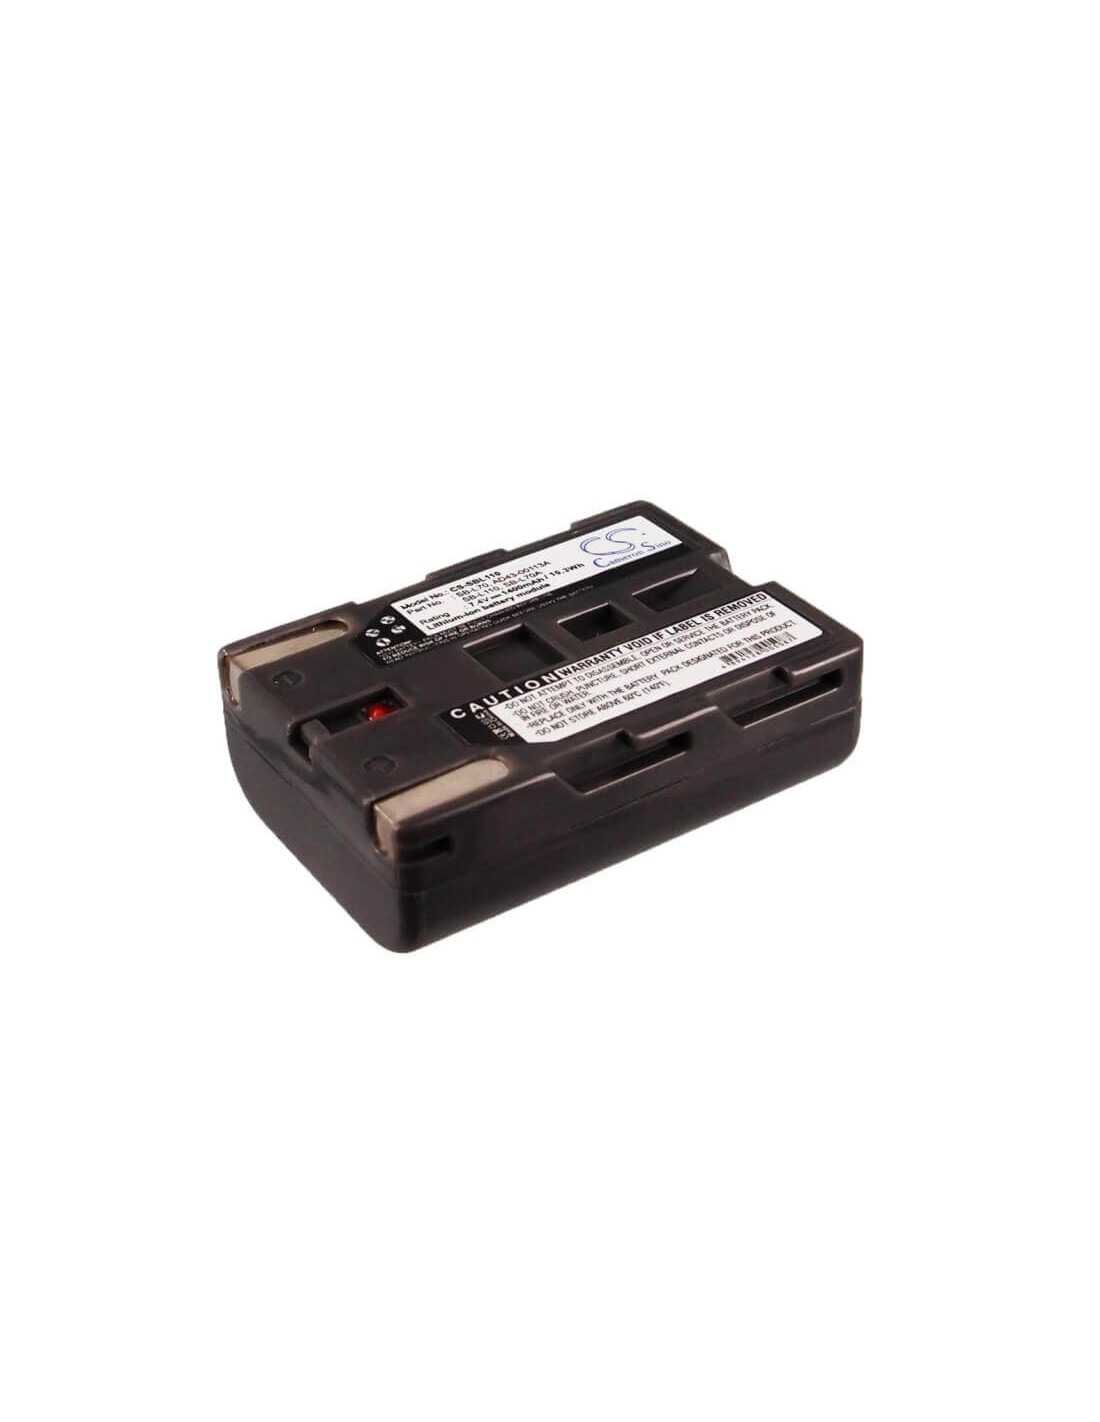 Battery for Medion Md41859, Md9021, Md9021n, Md9035, 7.4V, 1400mAh - 10.36Wh